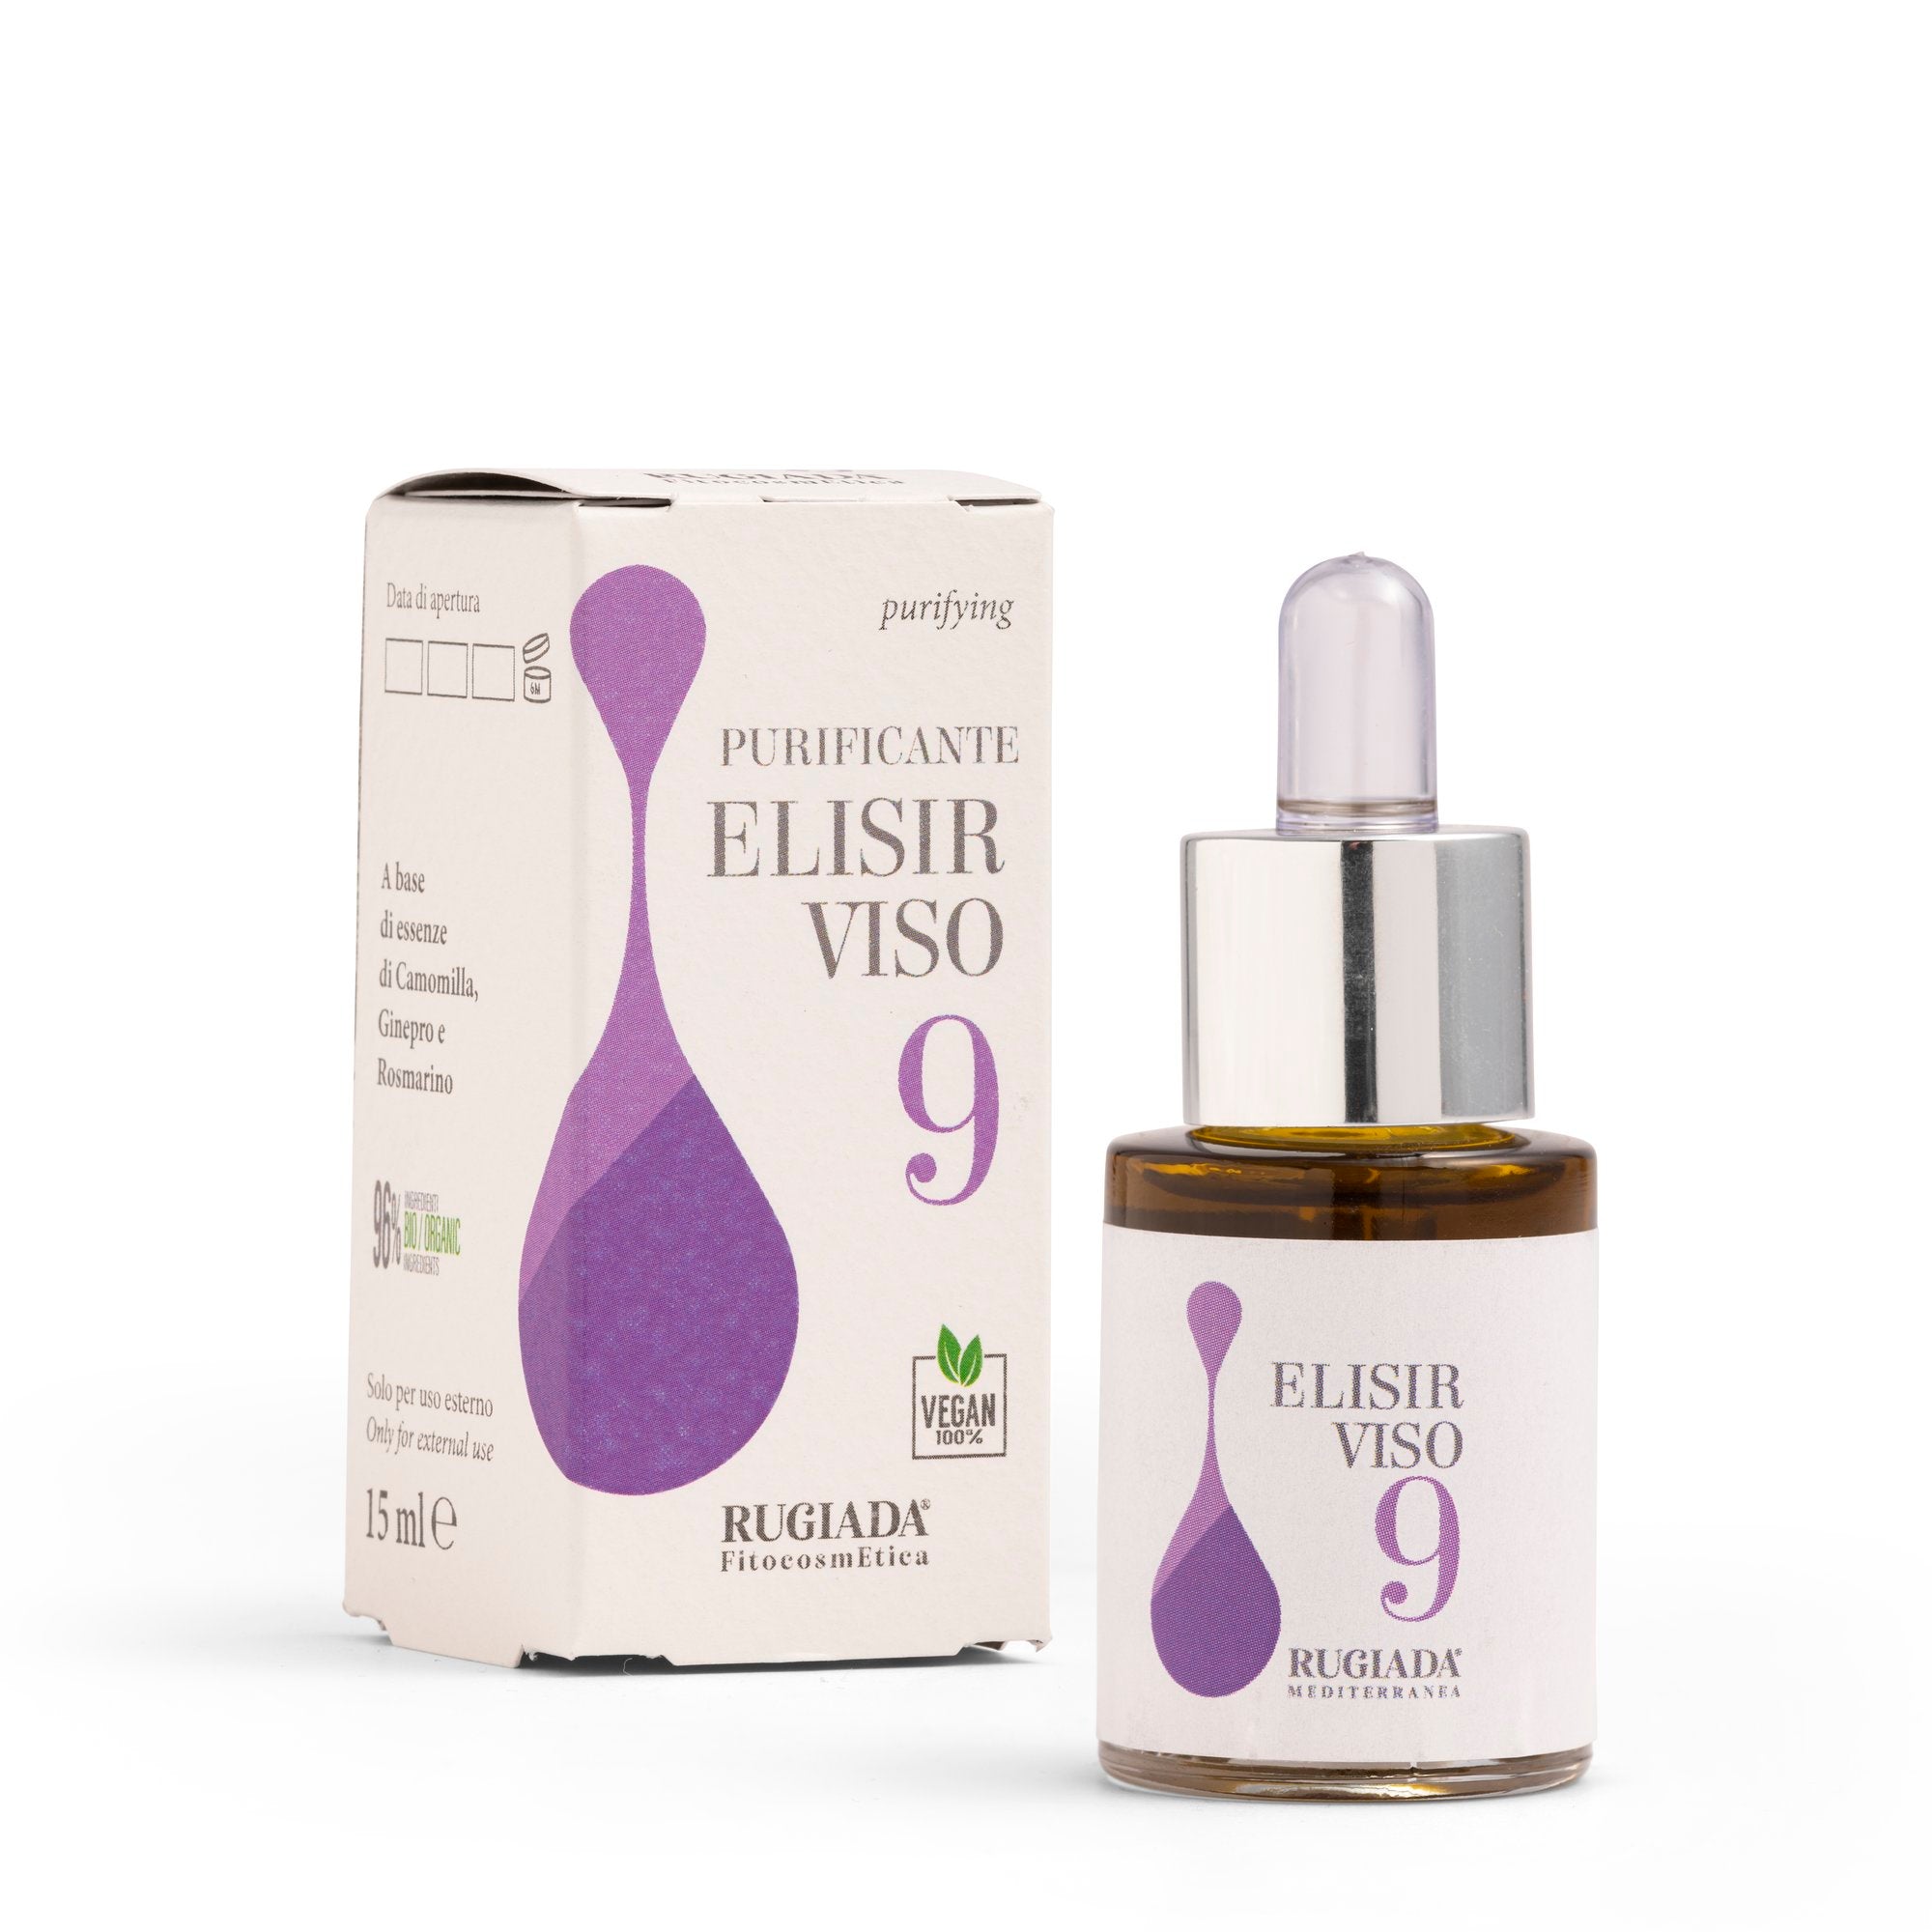 Elisir viso N. 9 purificante 15 ml - Per pelle a tendenza acneica